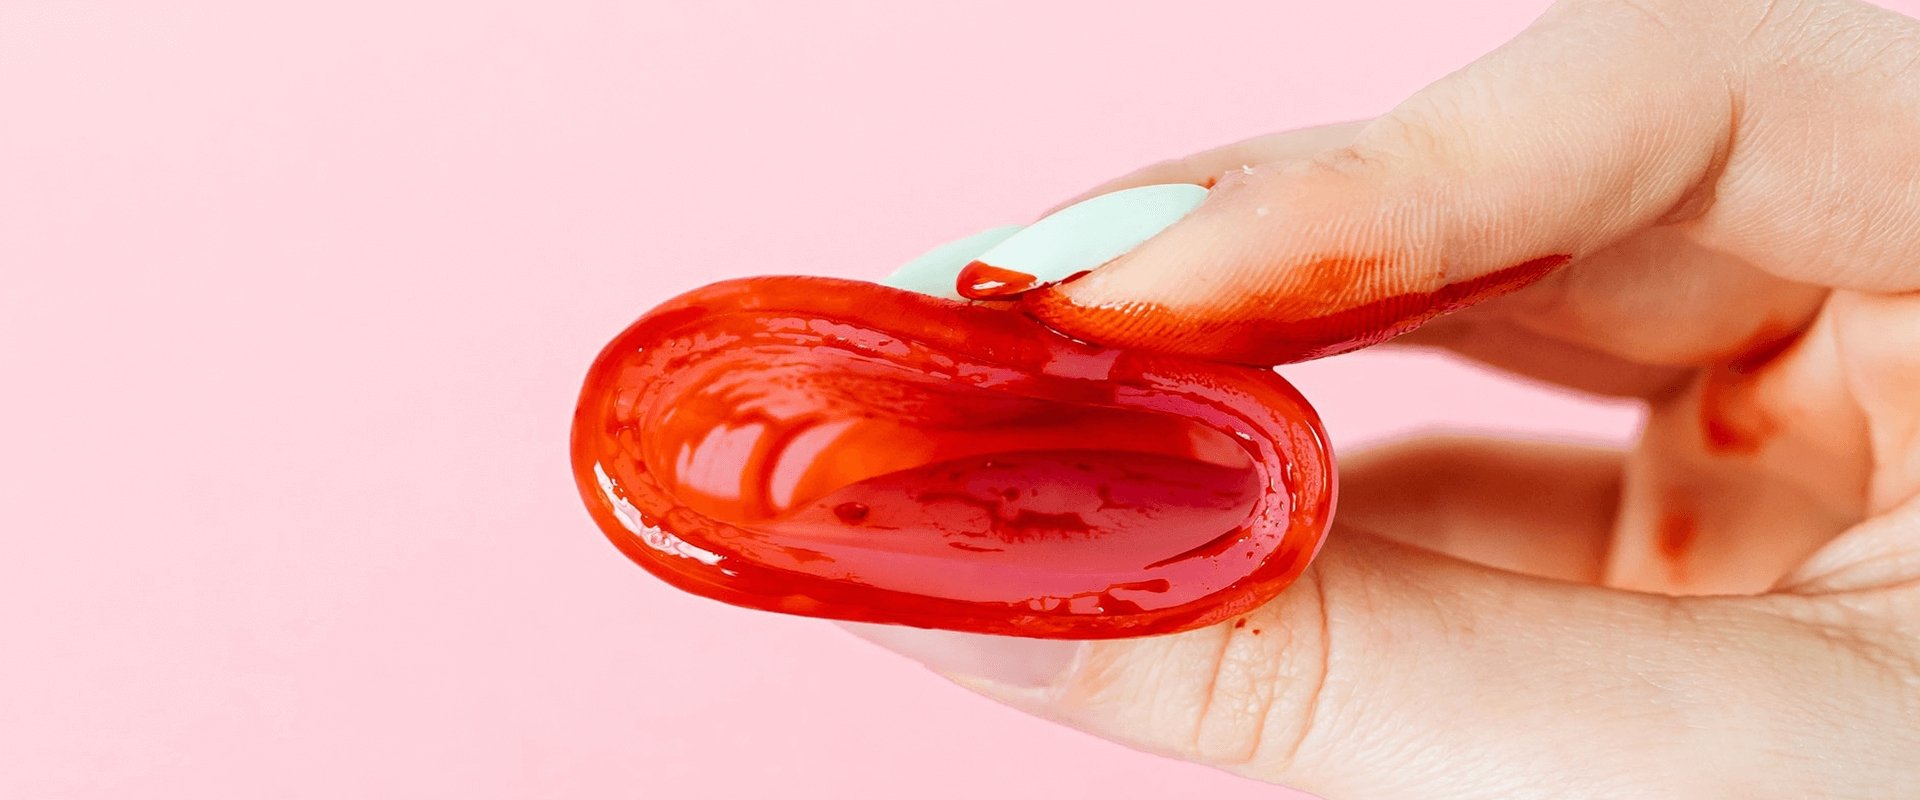 Só saúde ¿? - O que pode significar a menstruação com #coágulos? A